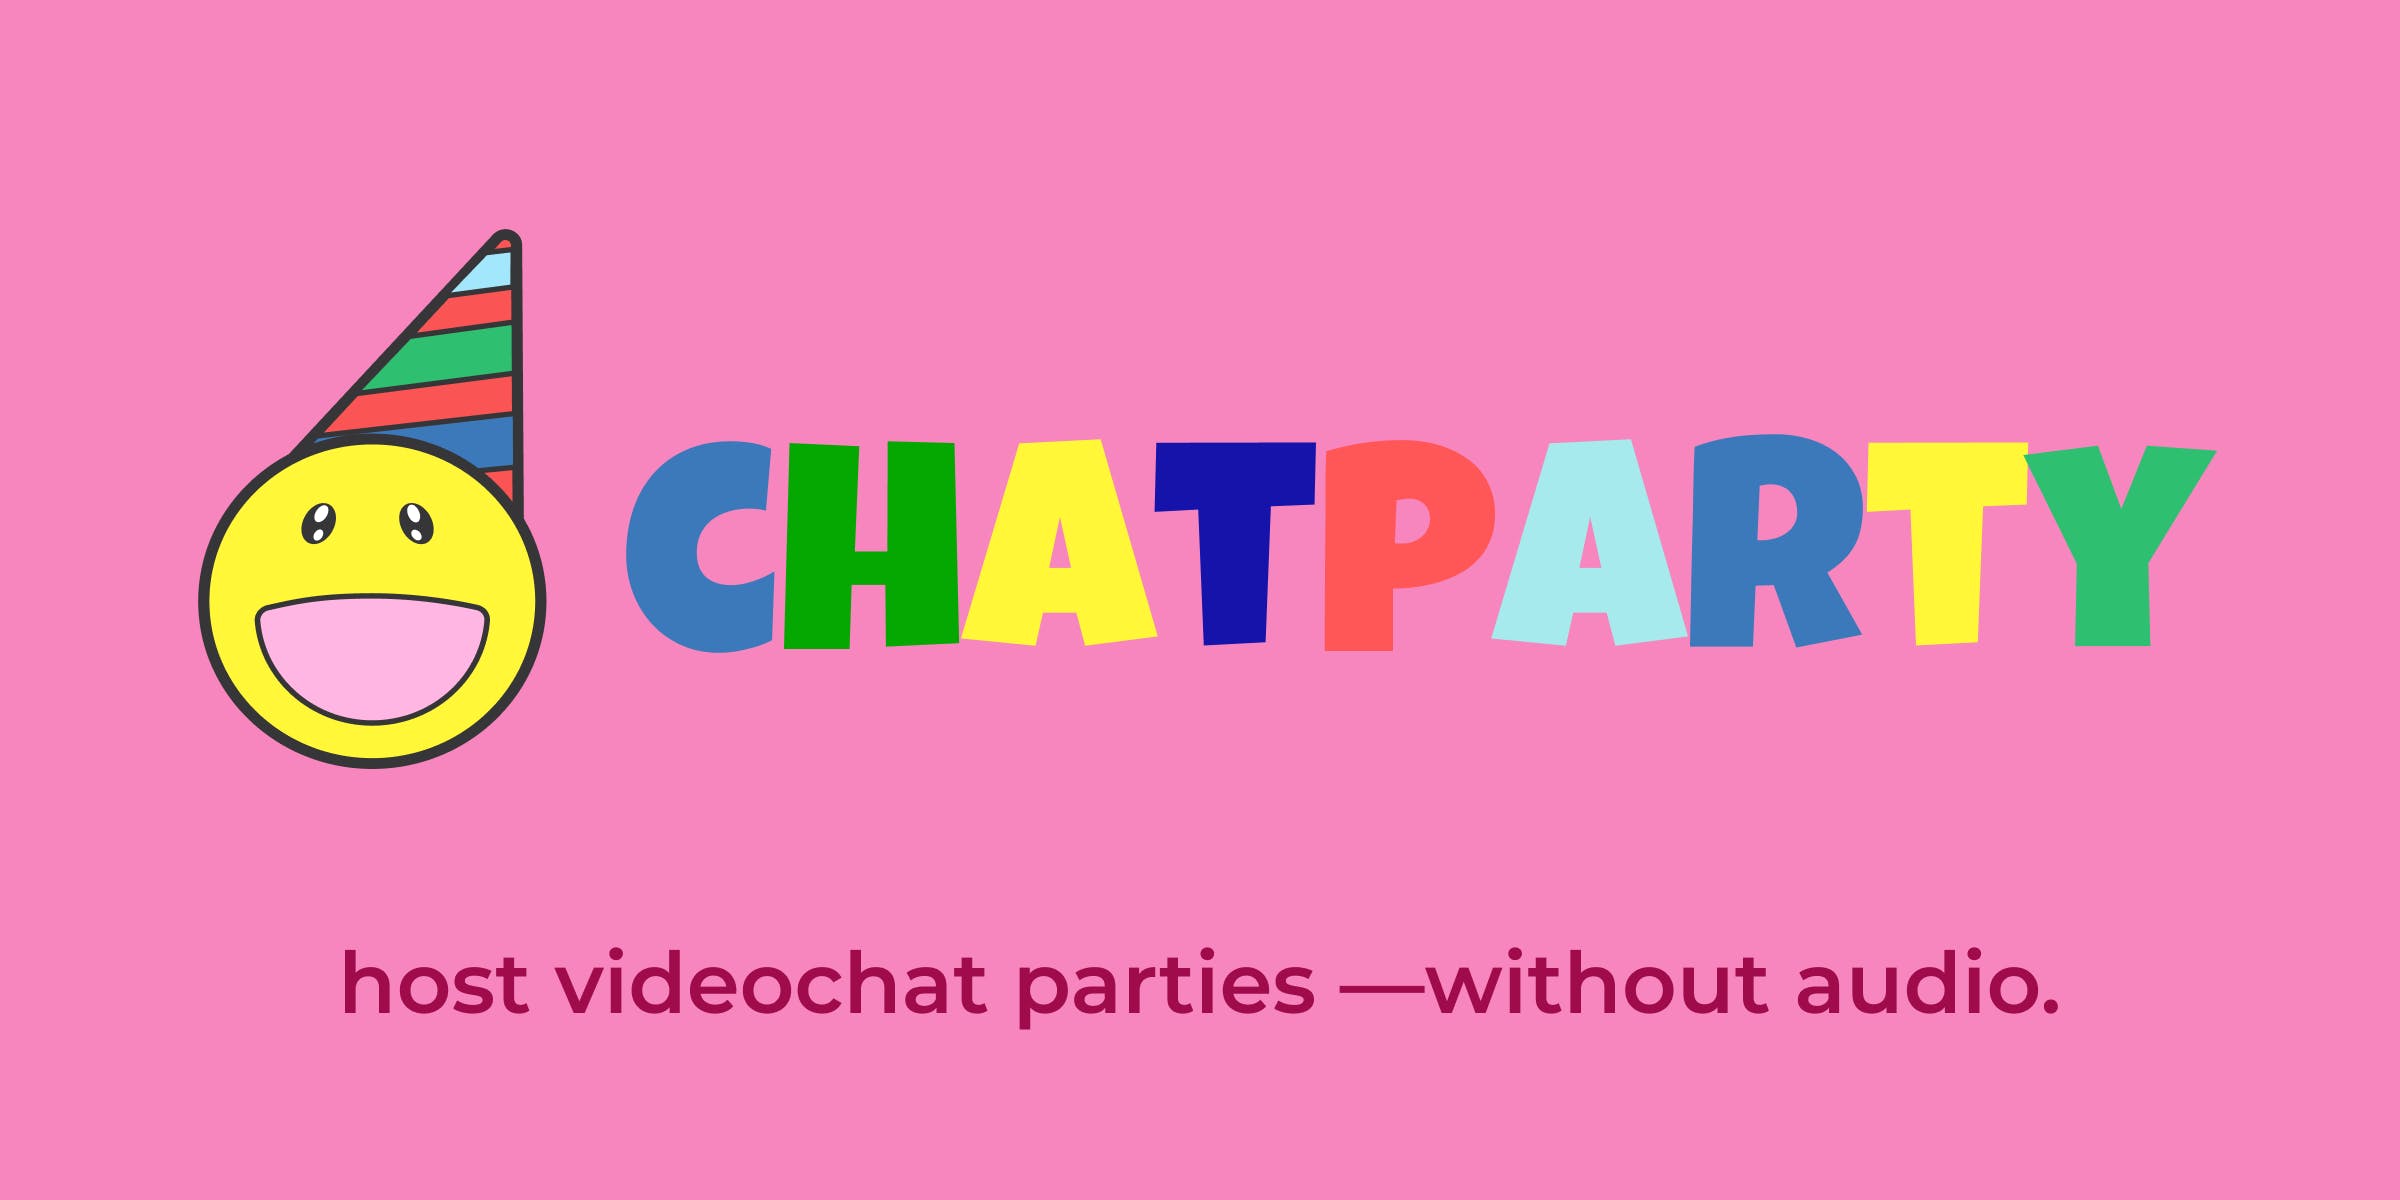 Chatparty media 2